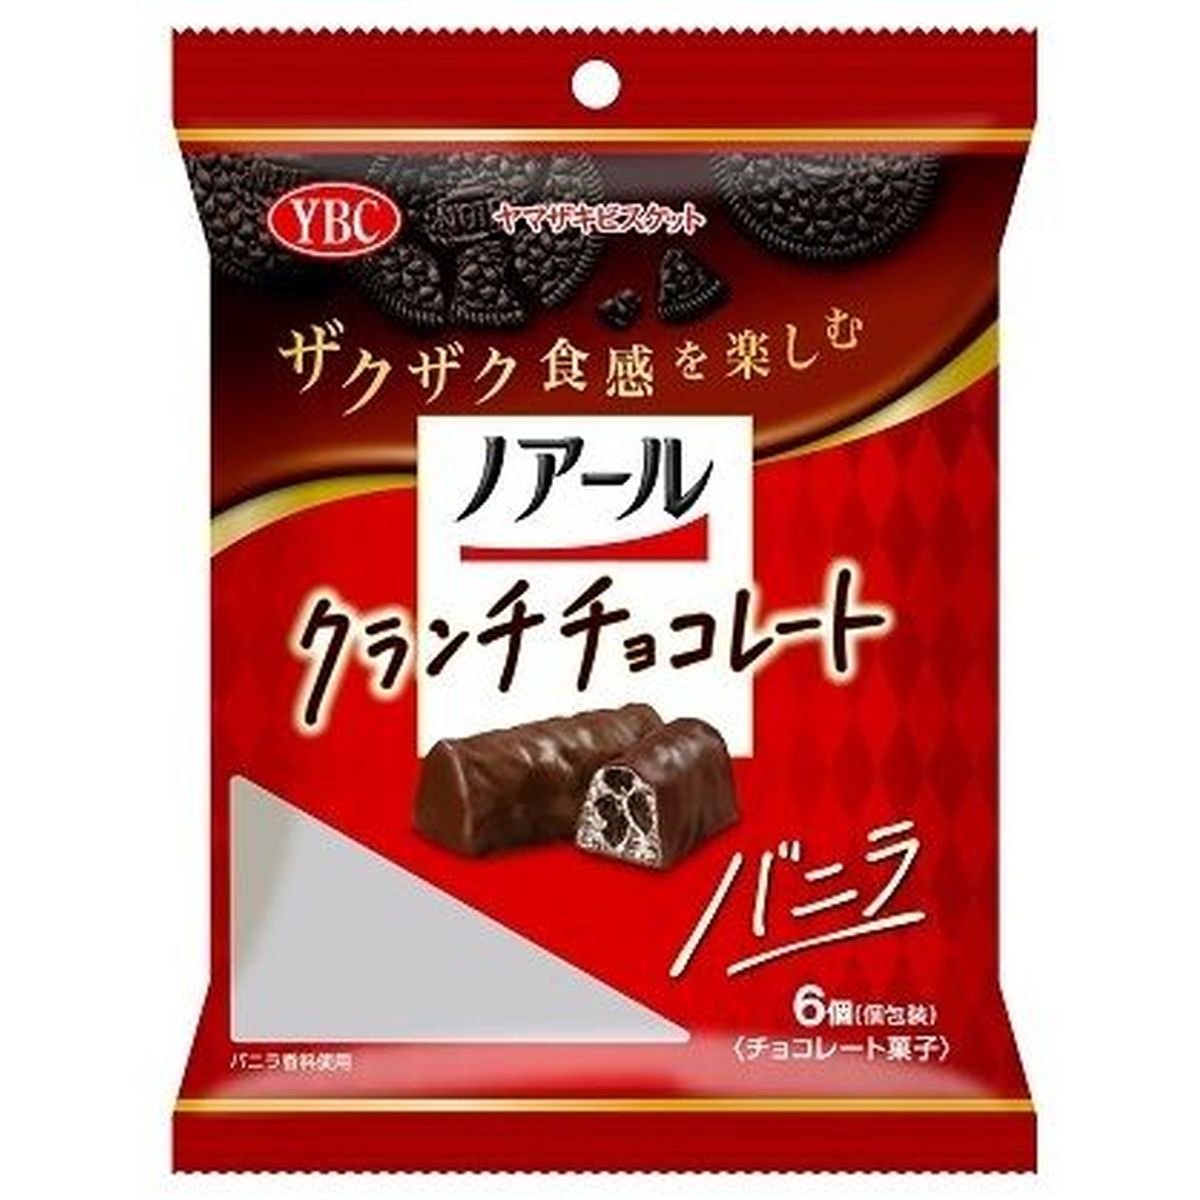 【12個入リ】ヤマザキビスケット ノアールクランチチョコ バニラ 6個